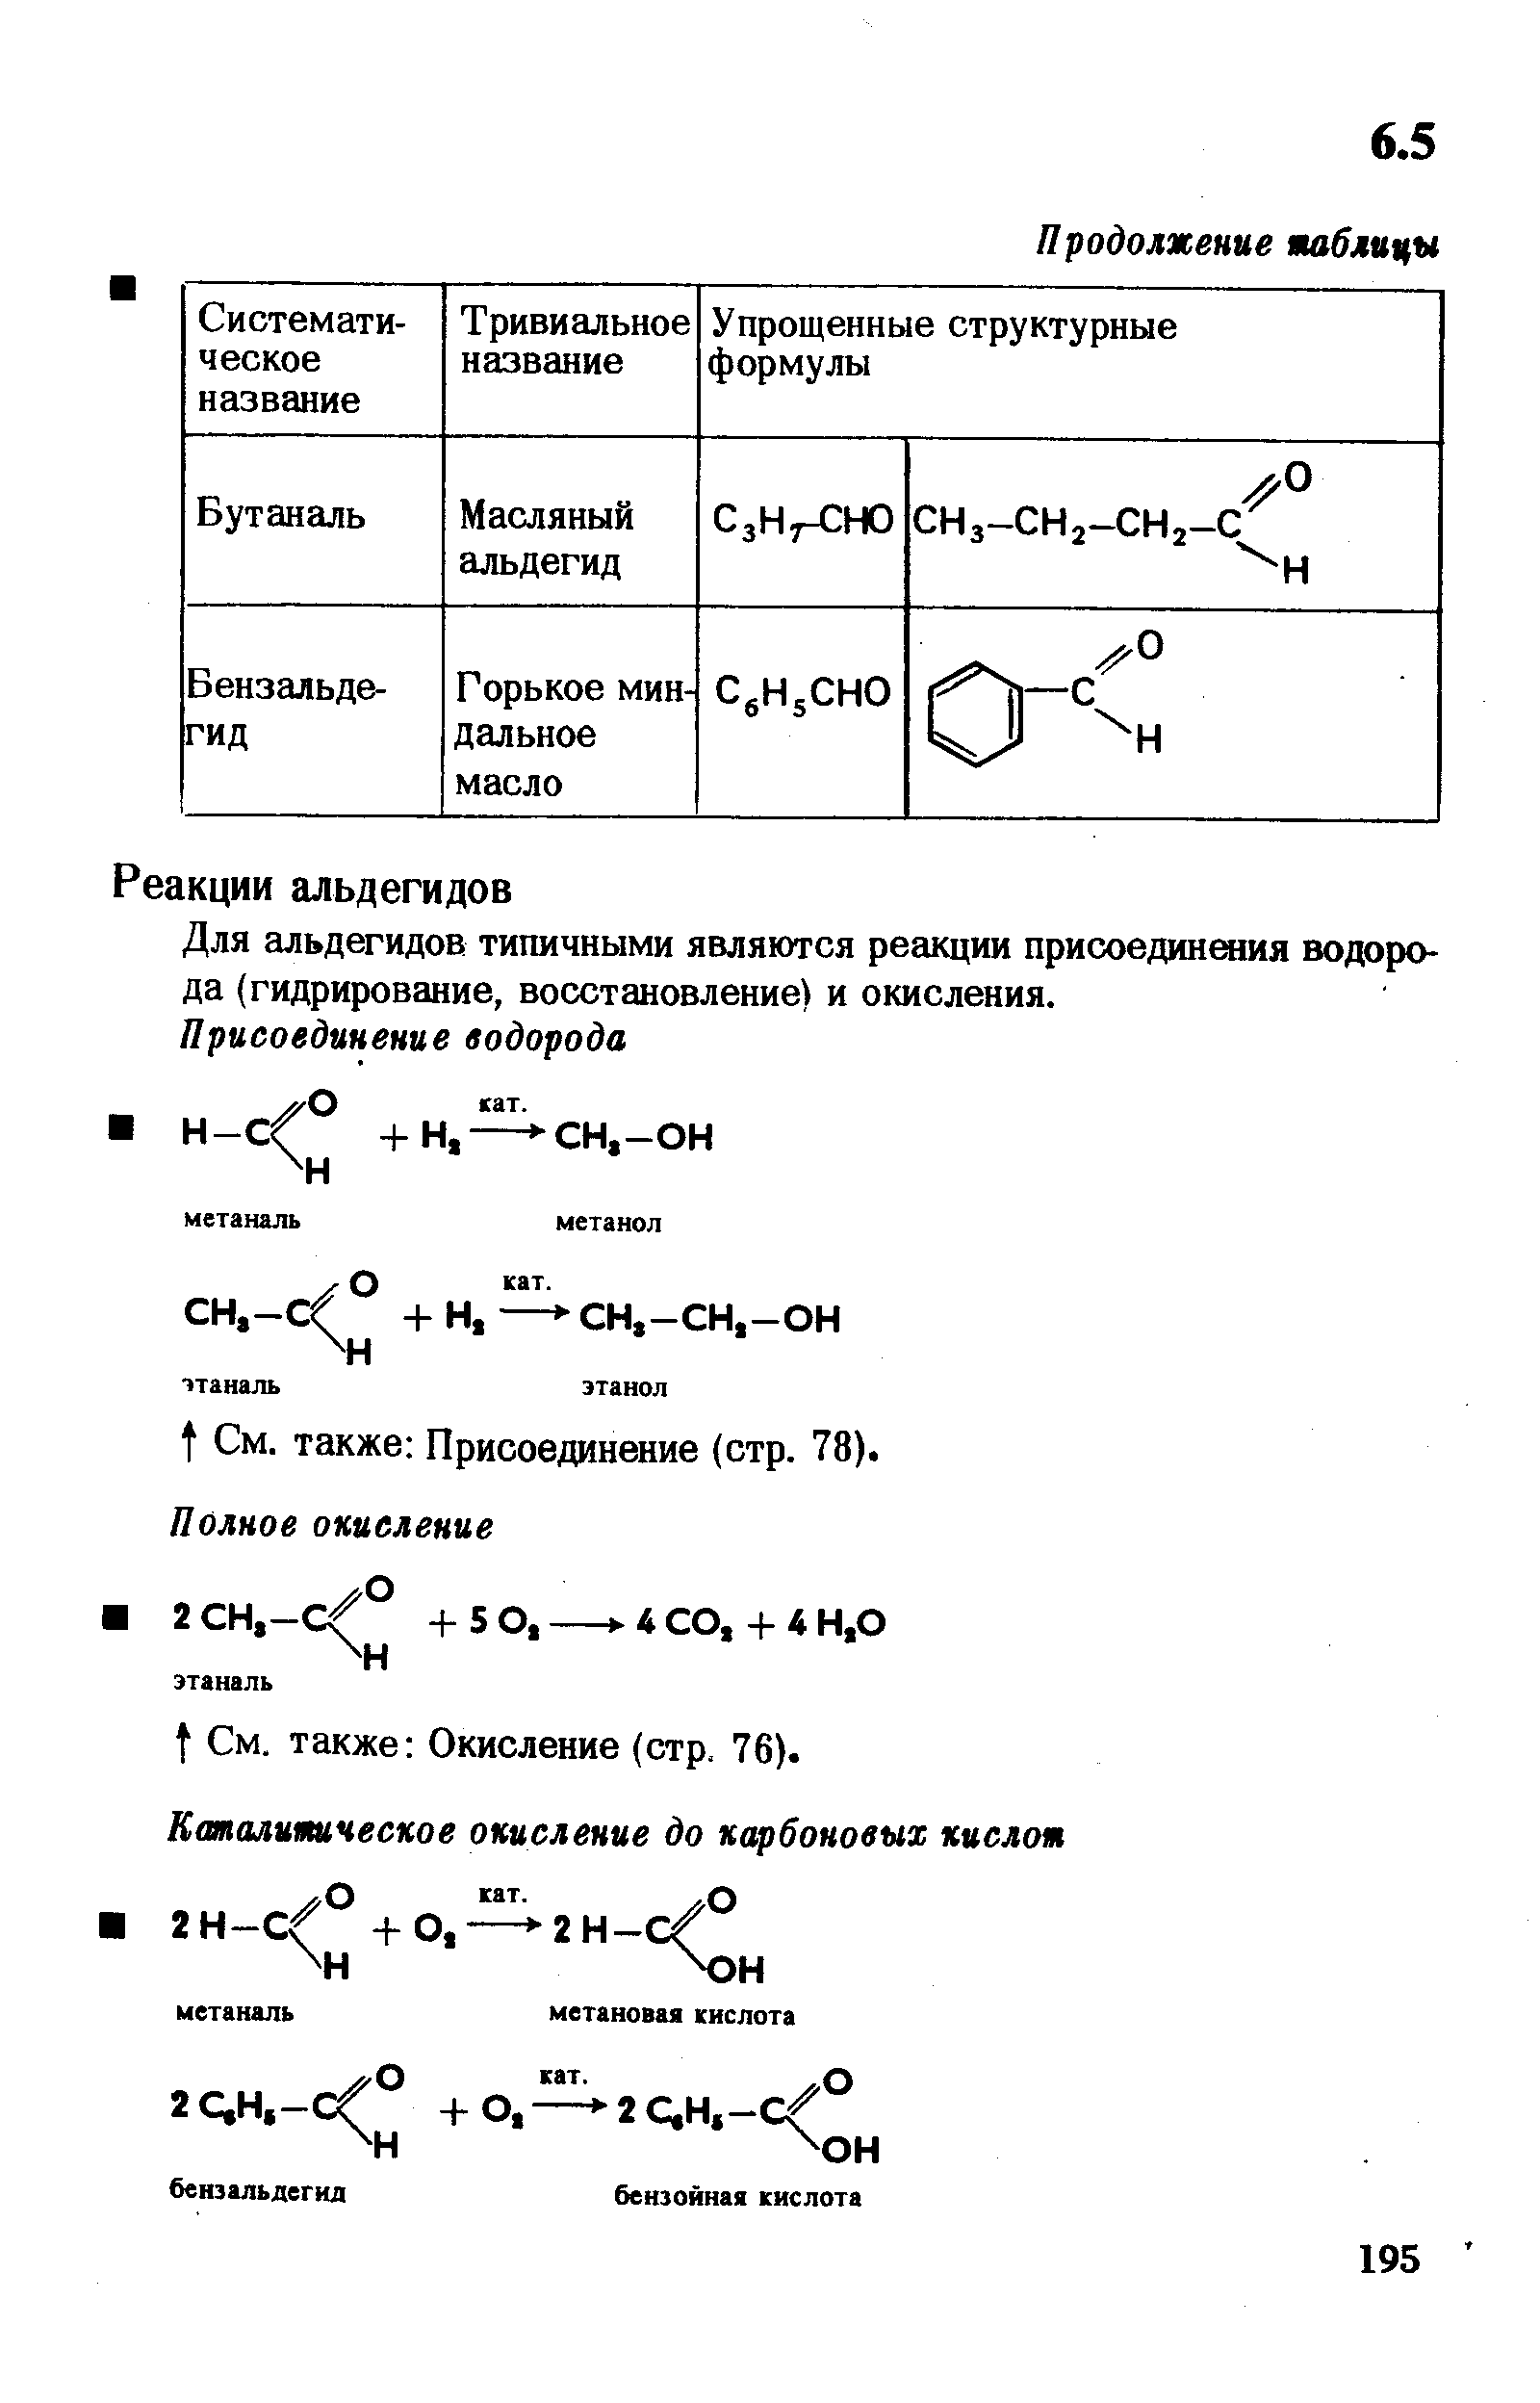 Для альдегидов типичными являются реакции присоединшия водорода (гидрирование, восстановление) и окисления.